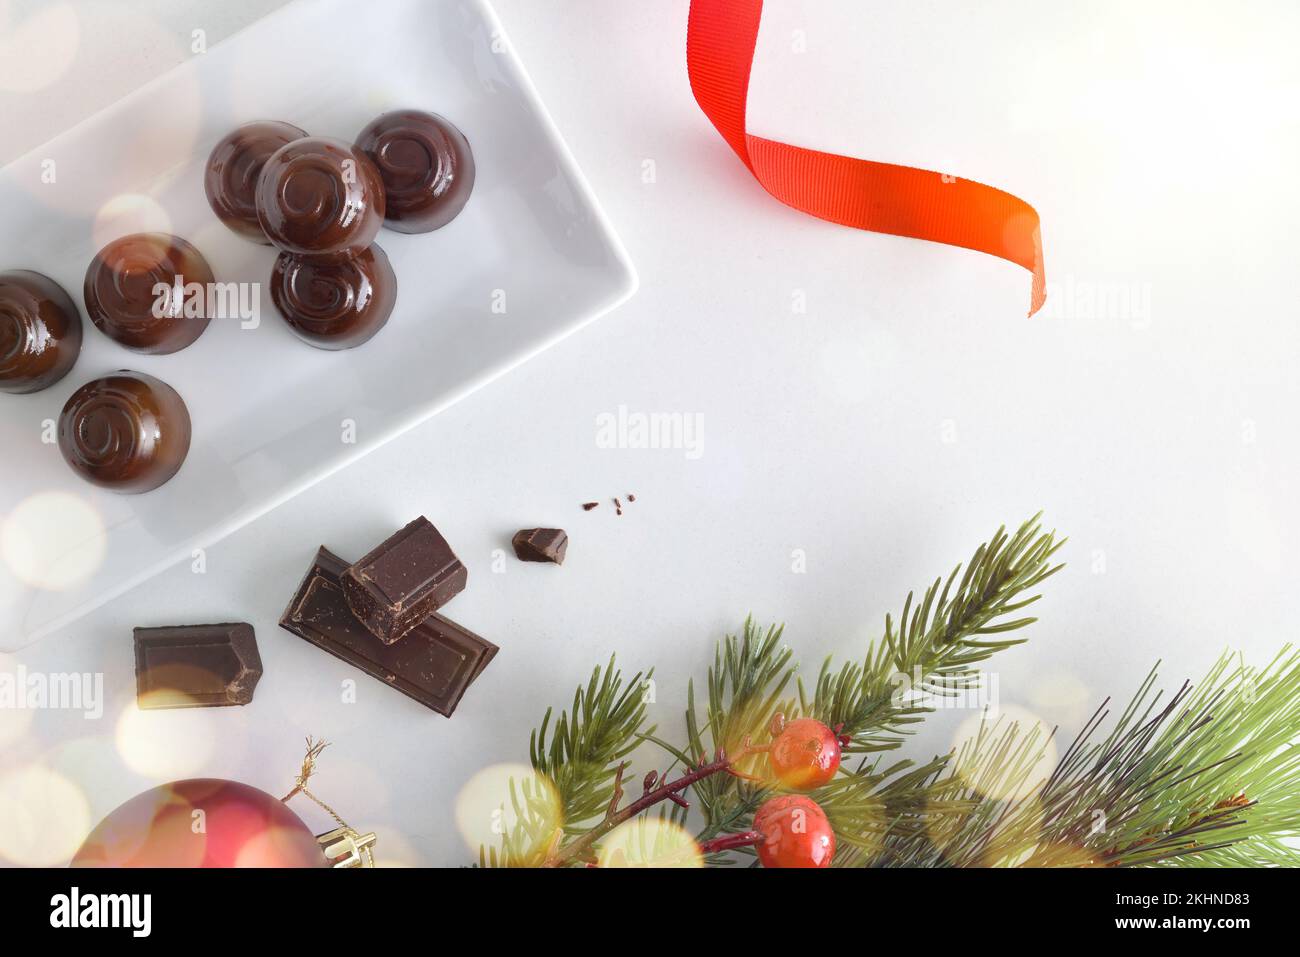 Weiße Keramikplatte gefüllt mit dunklen Schokoladenbonbons auf einem weißen Tisch mit Weihnachtsdekorationen und Portionen Schokolade als Desserts. Draufsicht. Stockfoto